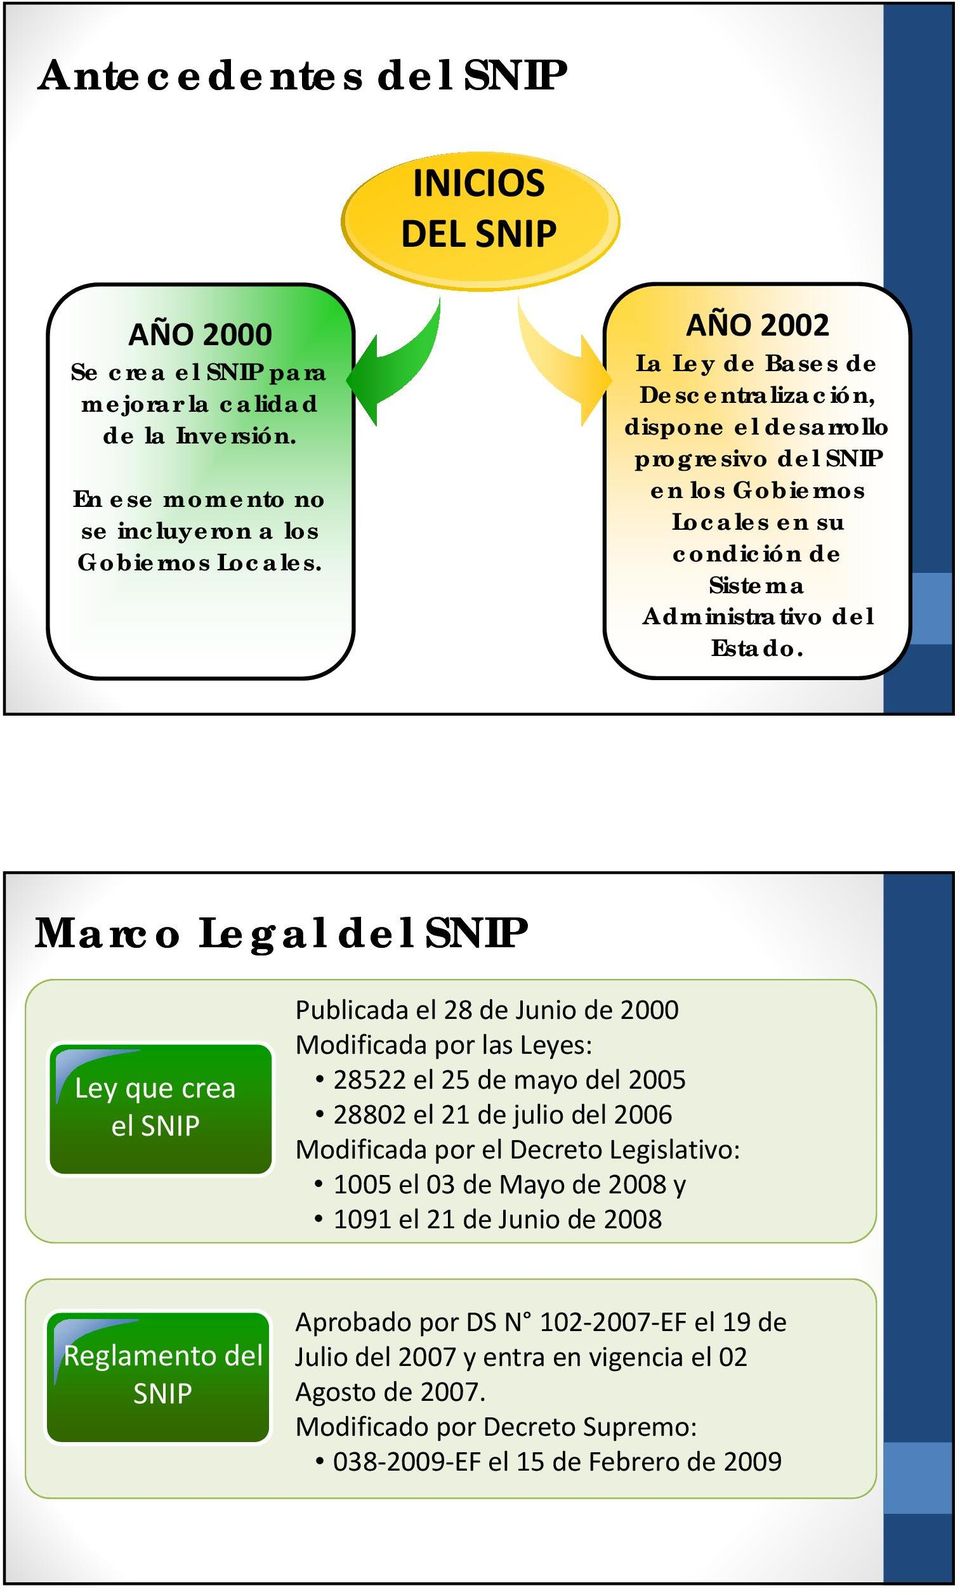 Marco Legal del SNIP Ley que crea el SNIP Publicada el 28 de Junio de 2000 Modificada por las Leyes: 28522 el 25 de mayo del 2005 28802 el 21 de julio del 2006 Modificada por el Decreto